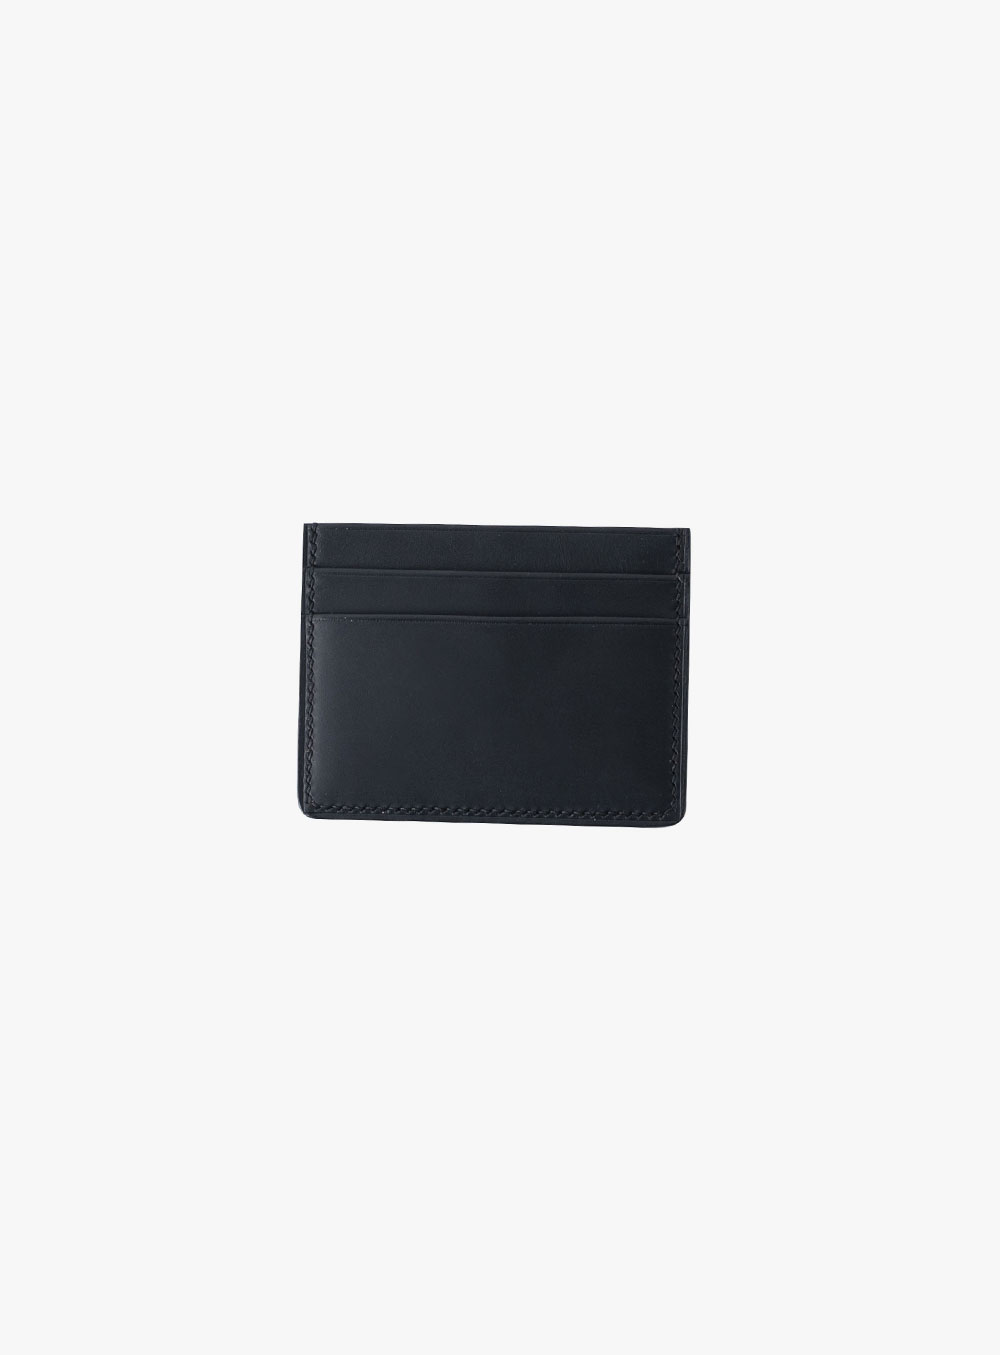 오디너리굿즈 - OG wallet01 - black